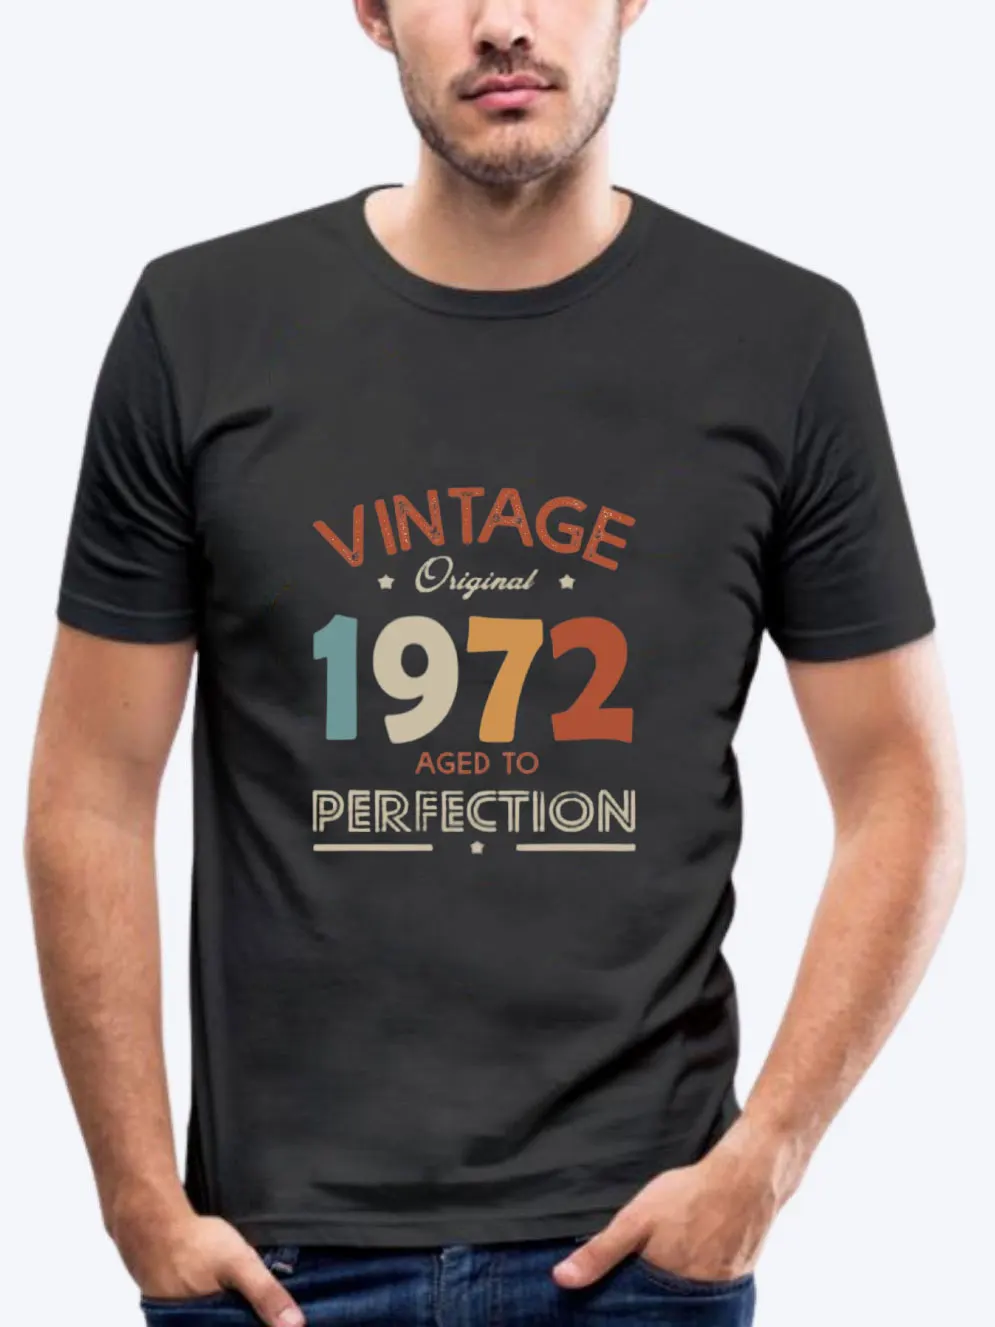 

Винтажная Мужская футболка 1972, футболка 50-го в 2022 году с подарком на день рождения или для мужчин старшего возраста, идея для подарка отцу, му...